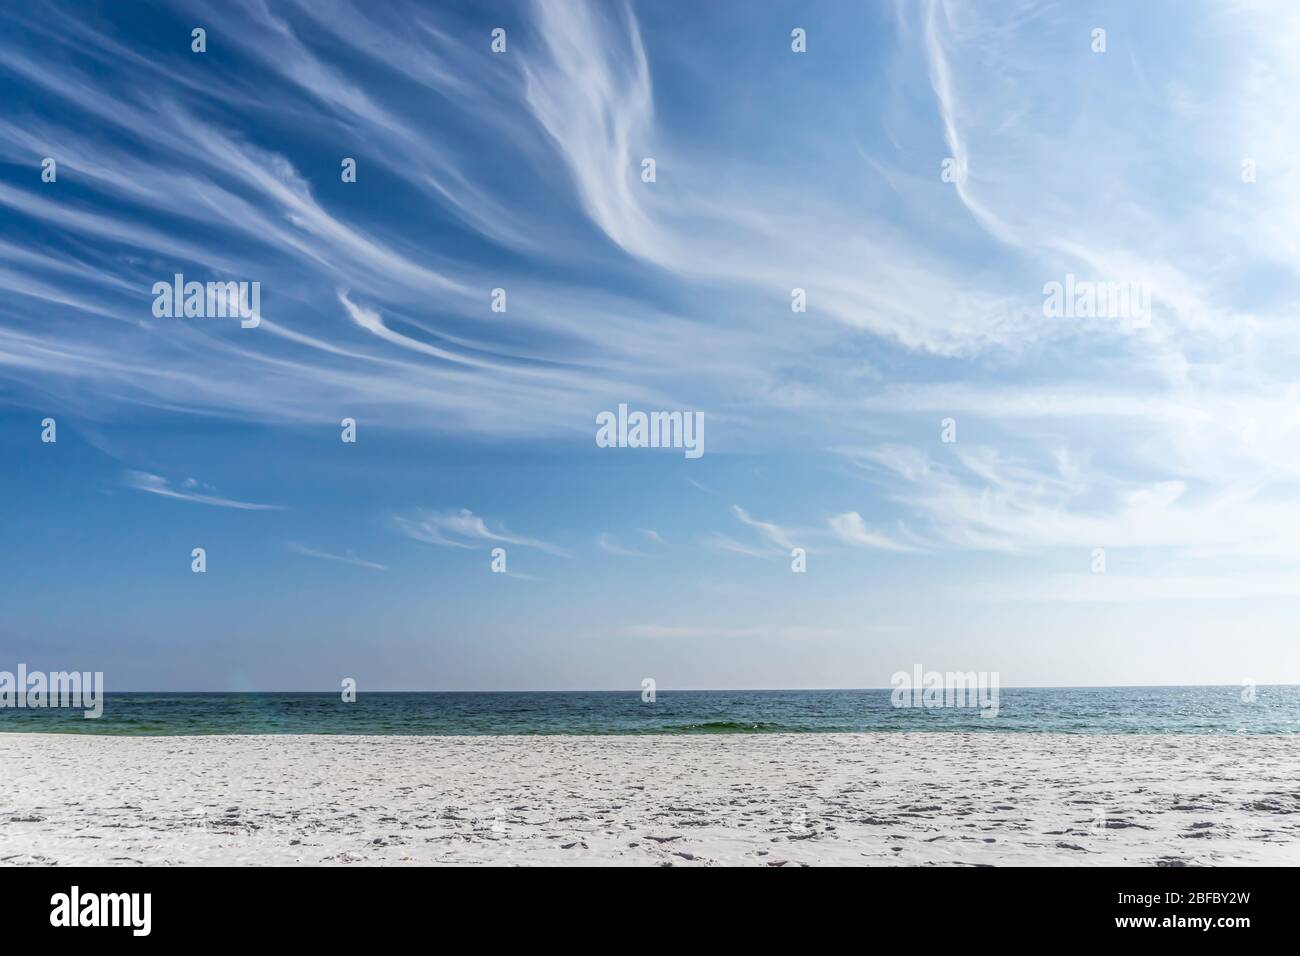 Der weiße Sandstrand von Pensacola, Florida, kontrastiert mit dem tieftürkisfarbenen Meer und dem blauen Himmel, der mit wisigen Zirruswolken gefüllt ist Stockfoto